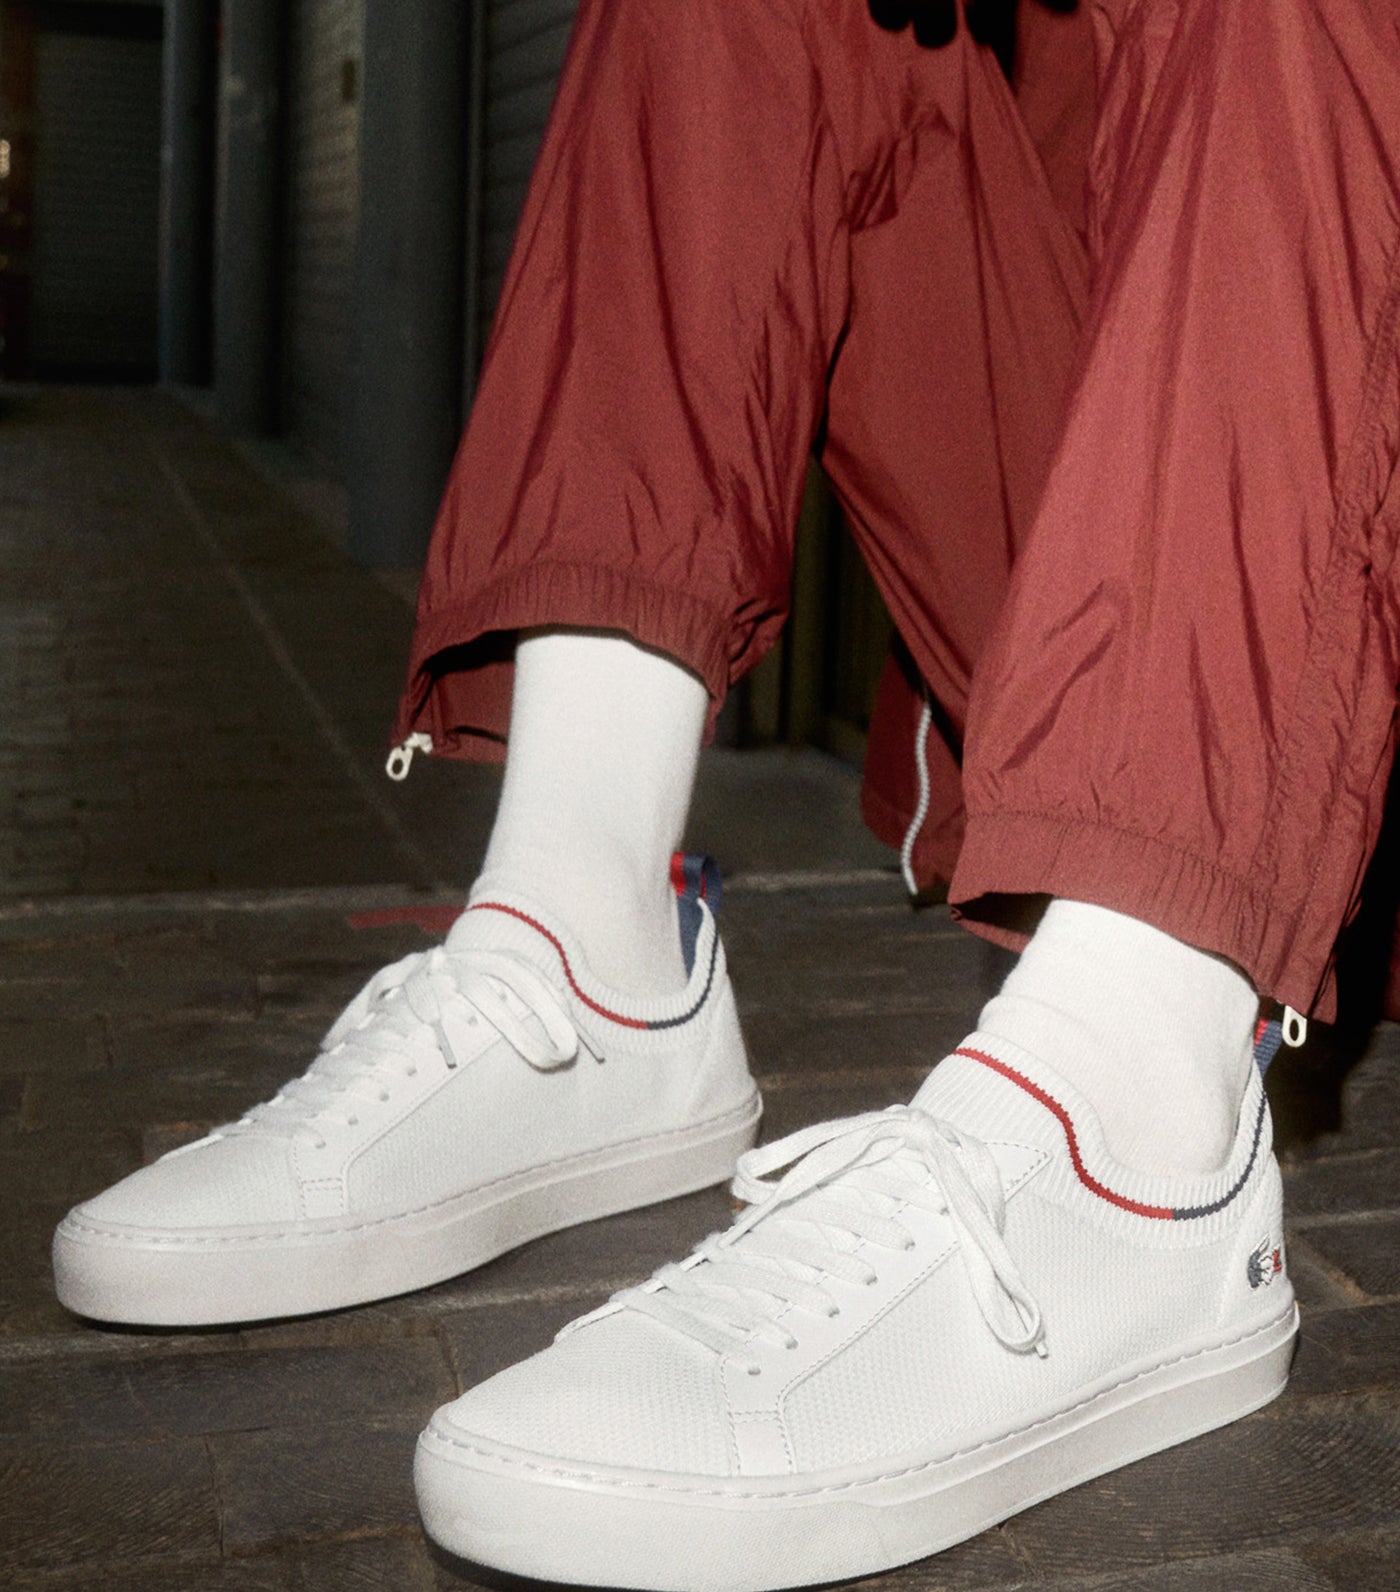 Men's La Piquée Textile Tricolor Sneakers White/Navy/Red